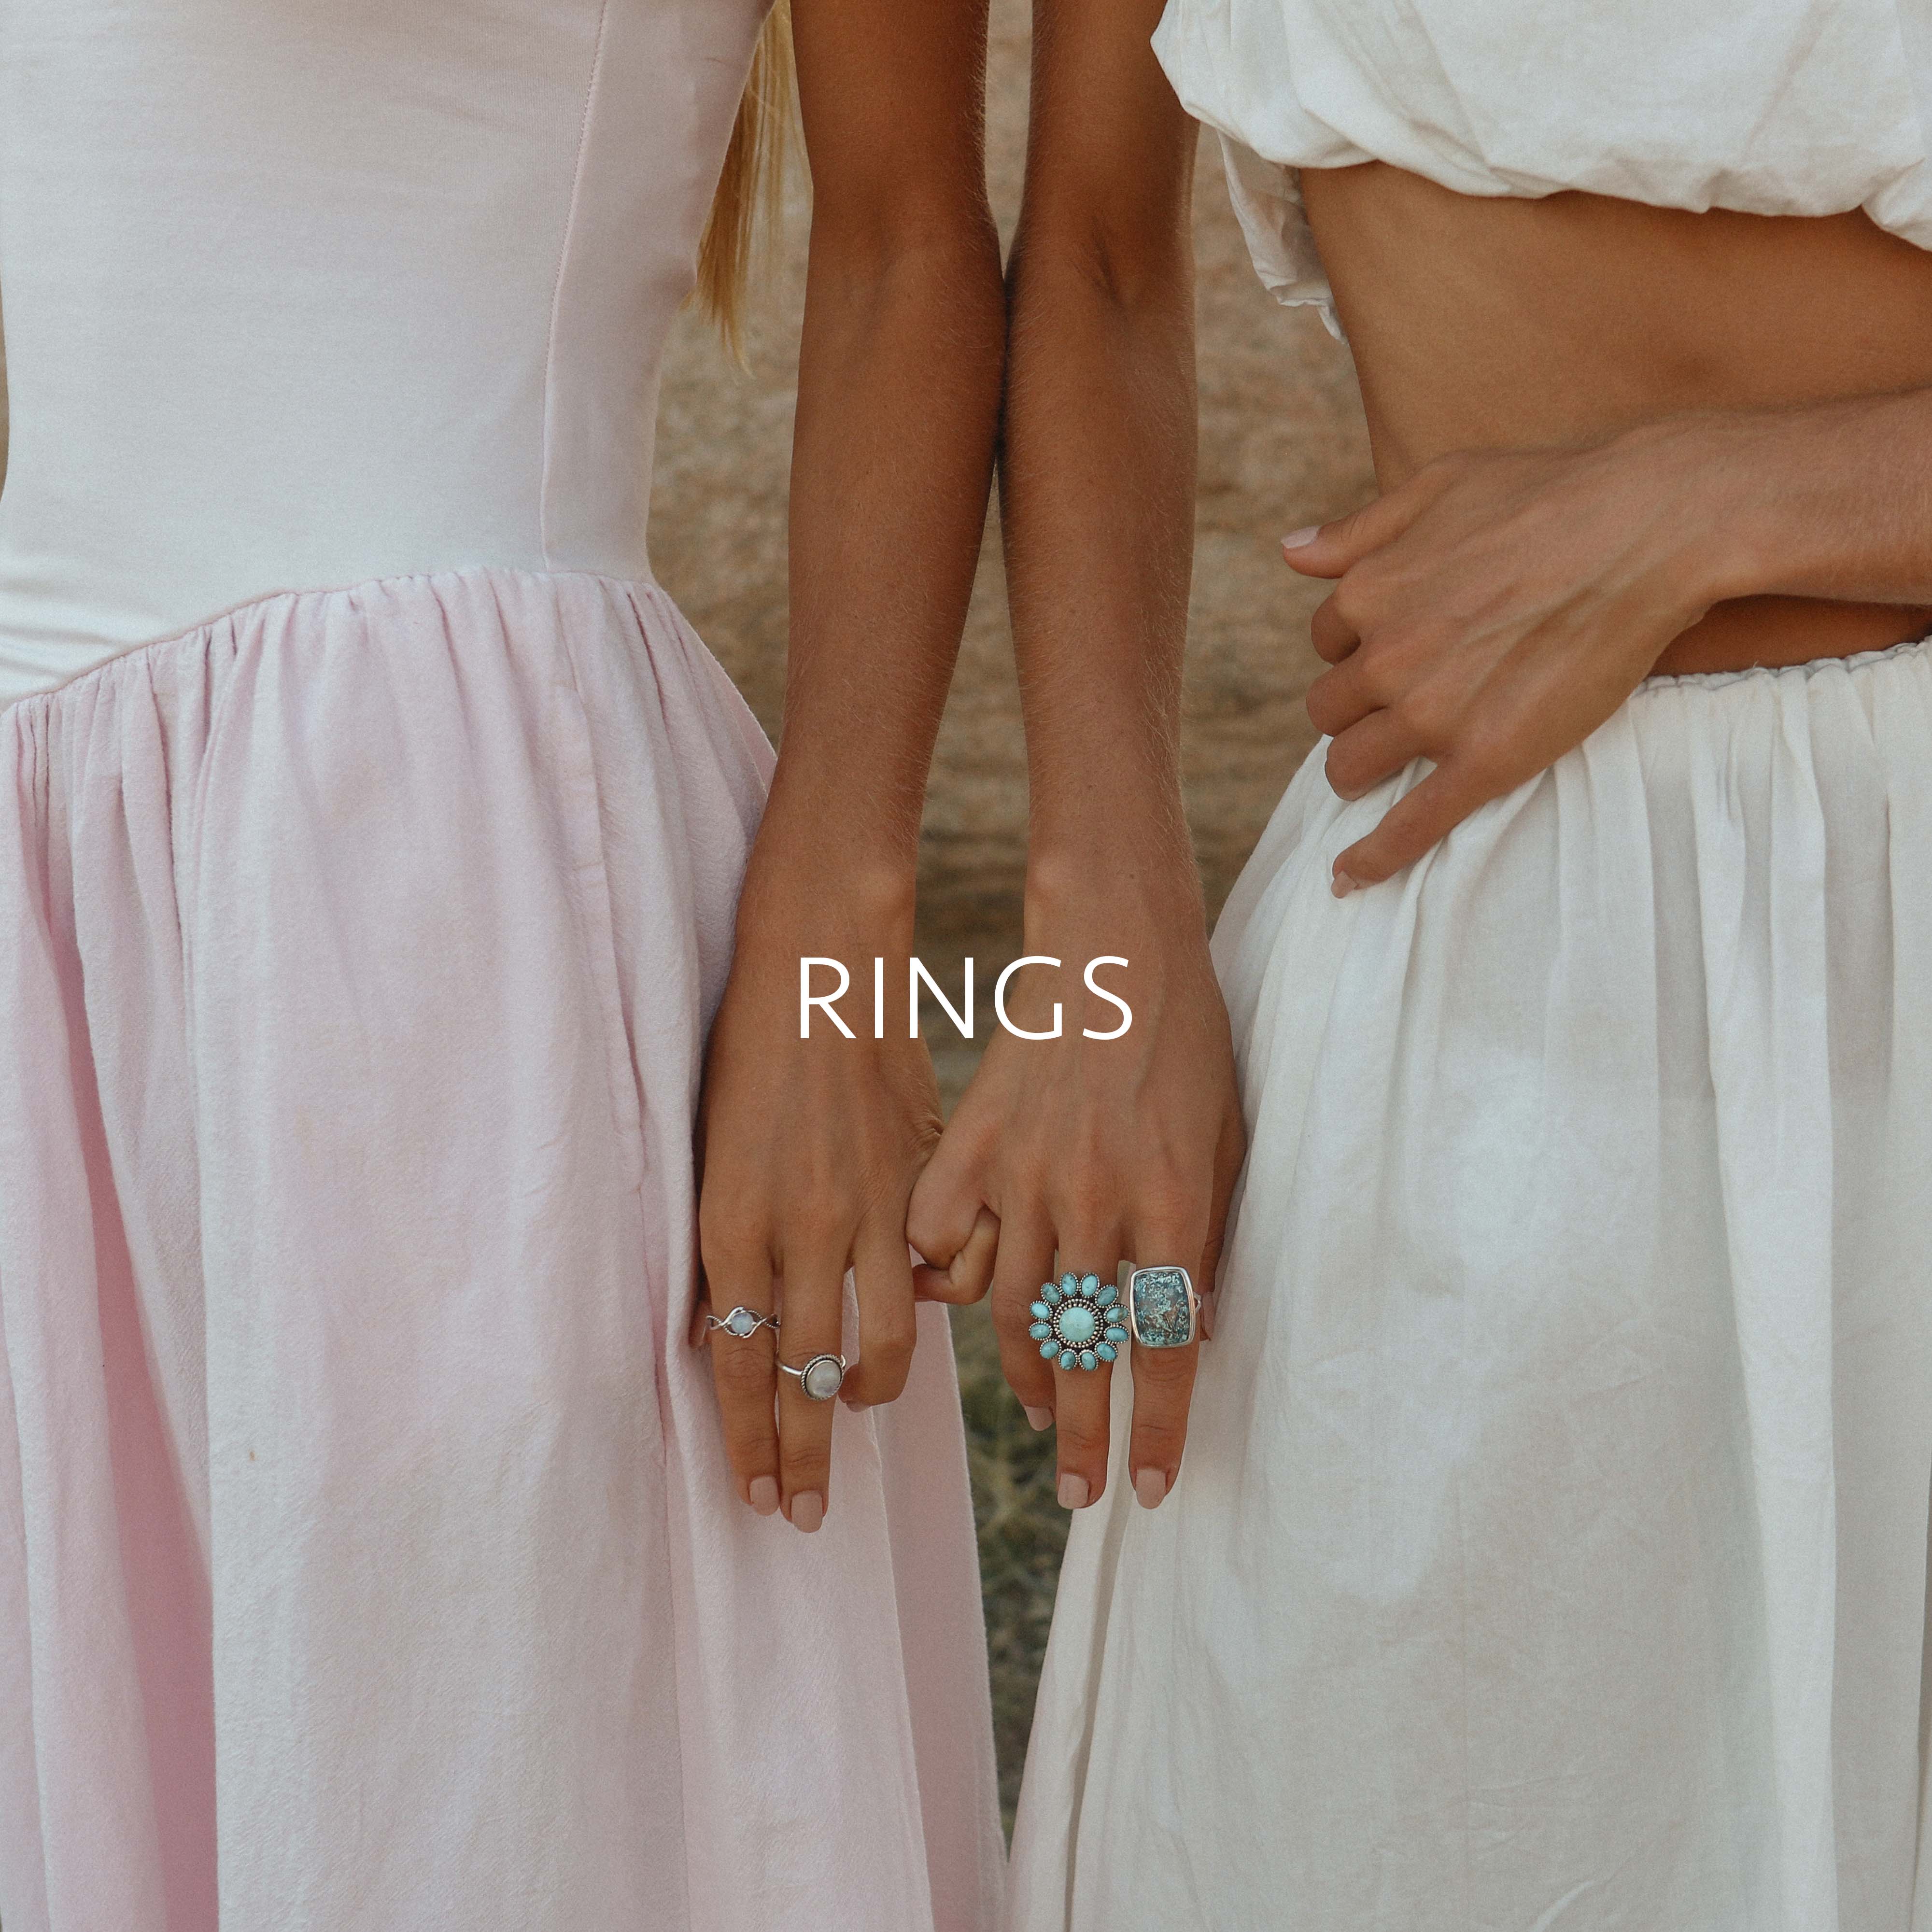 Rings - www.indieandharper.com